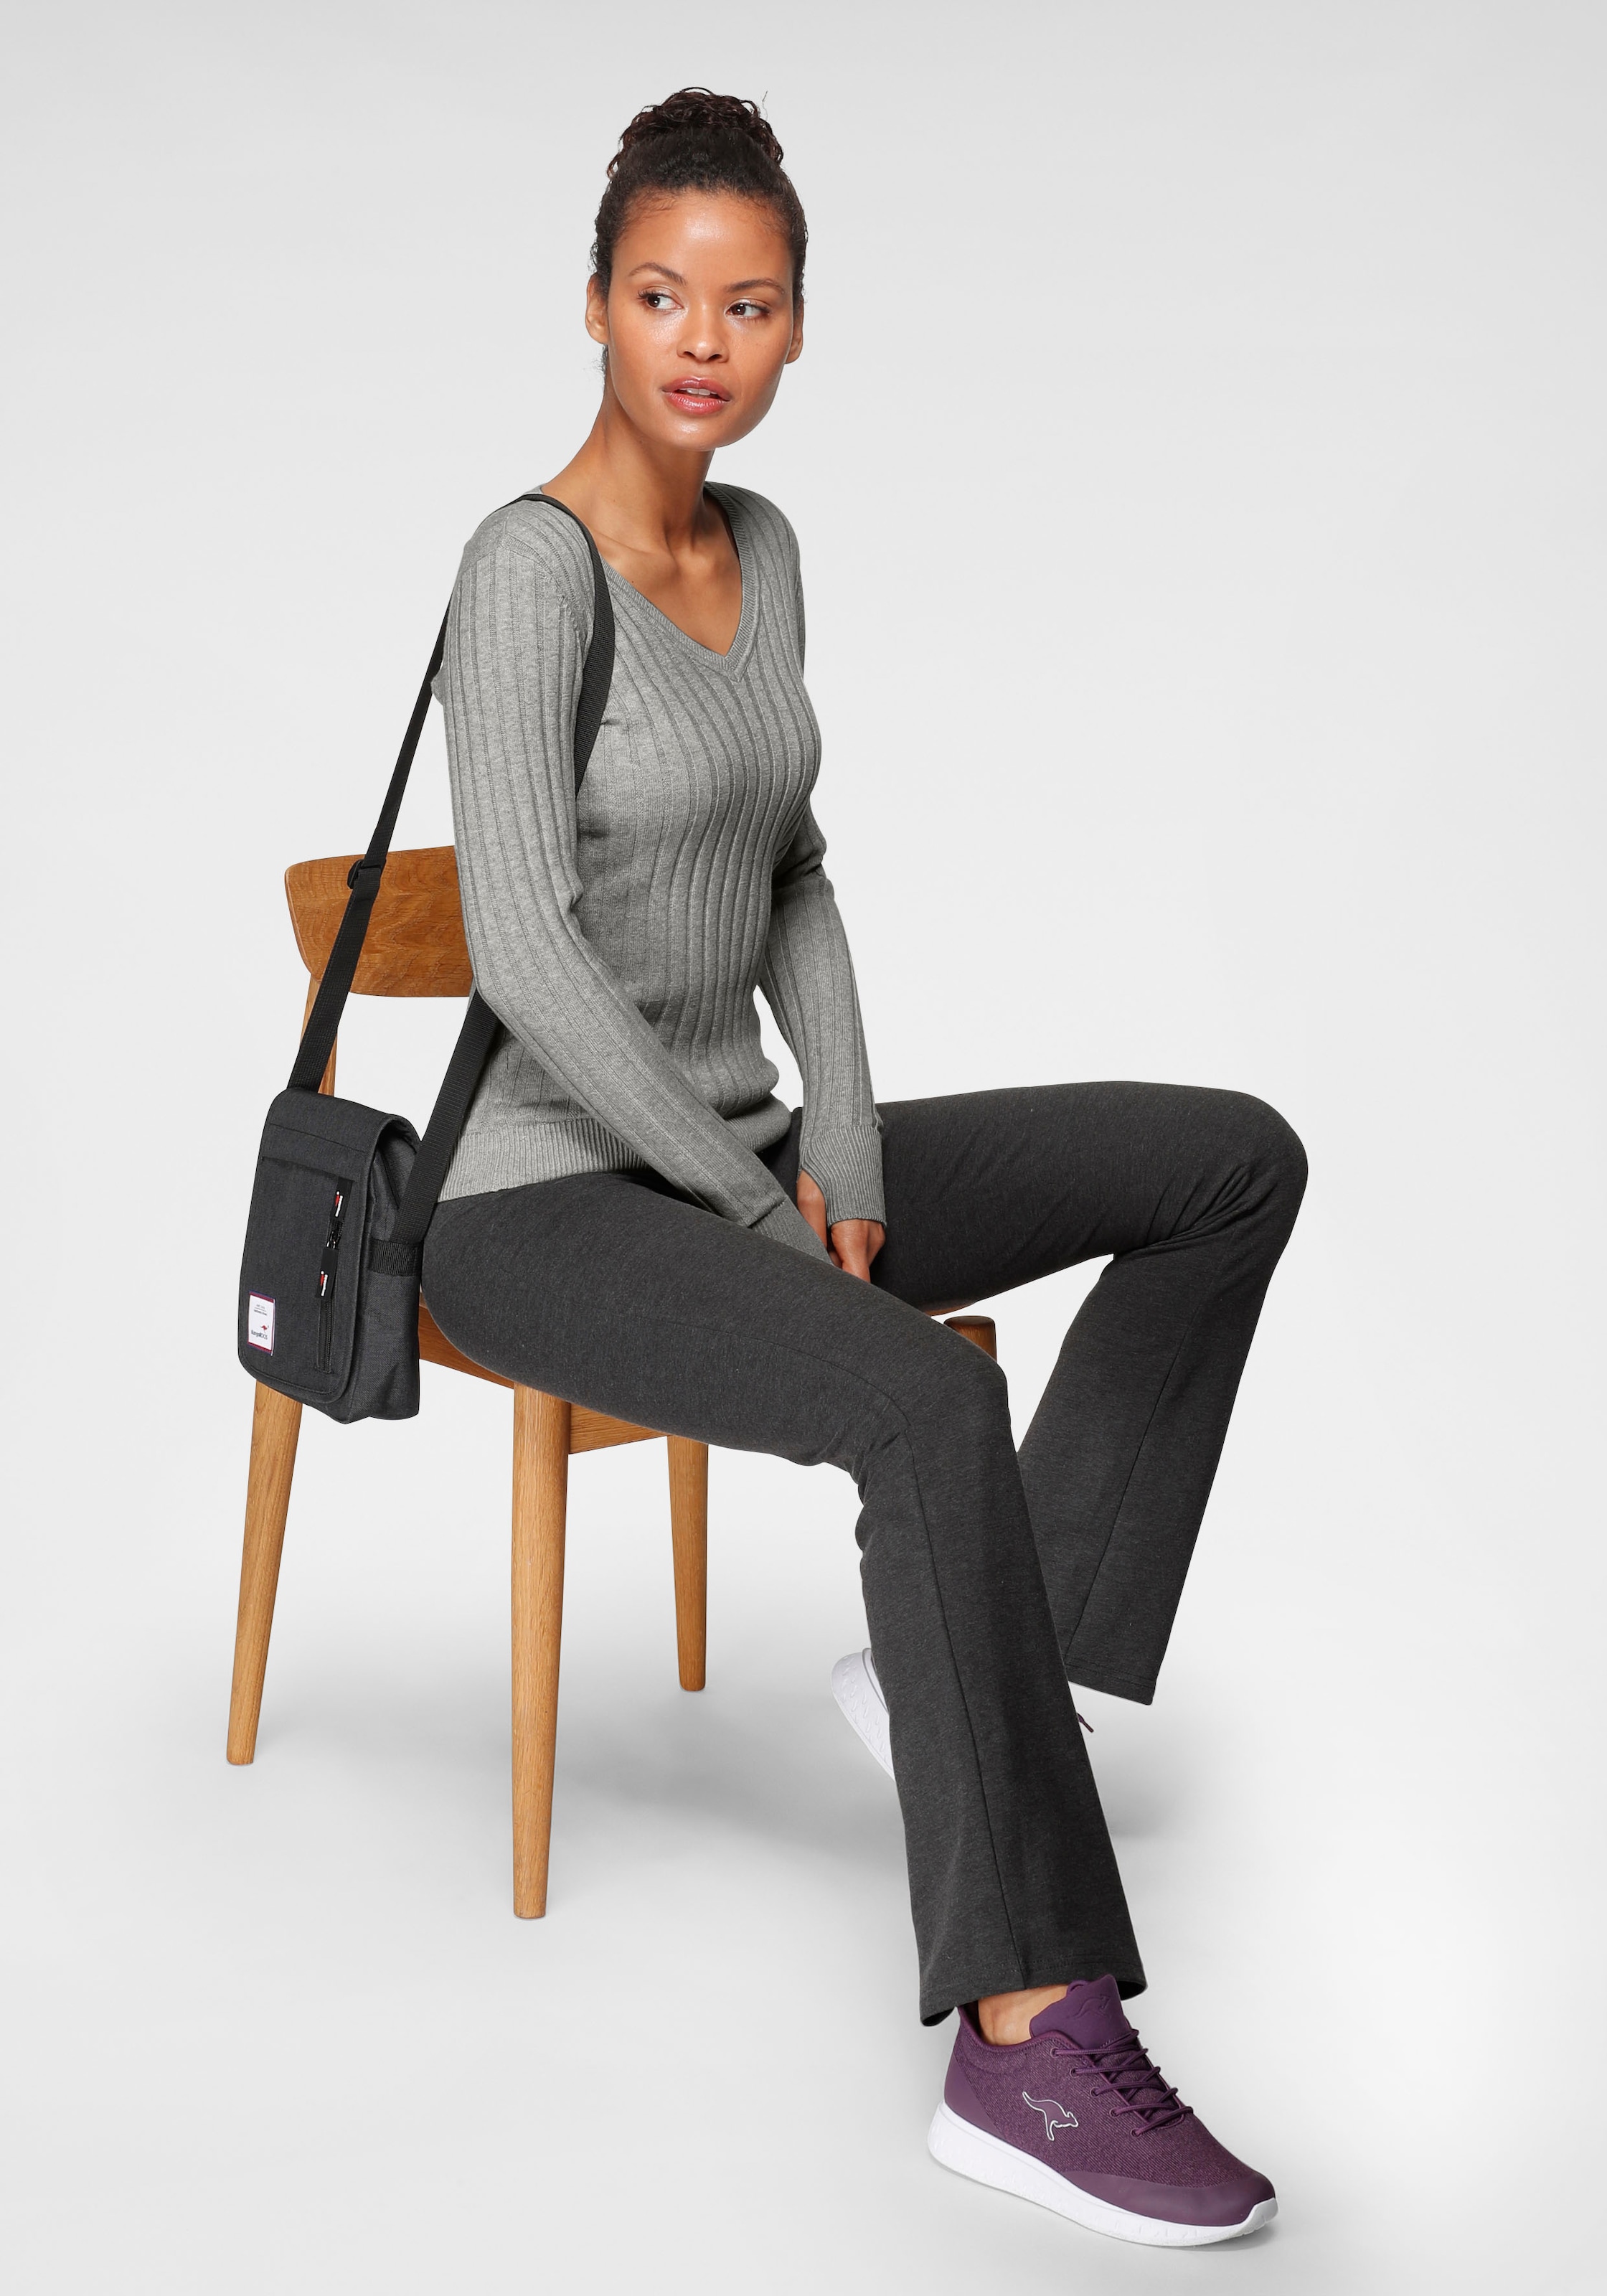 KangaROOS V-Ausschnitt-Pullover, in breit geripptem Feinstrick shoppen